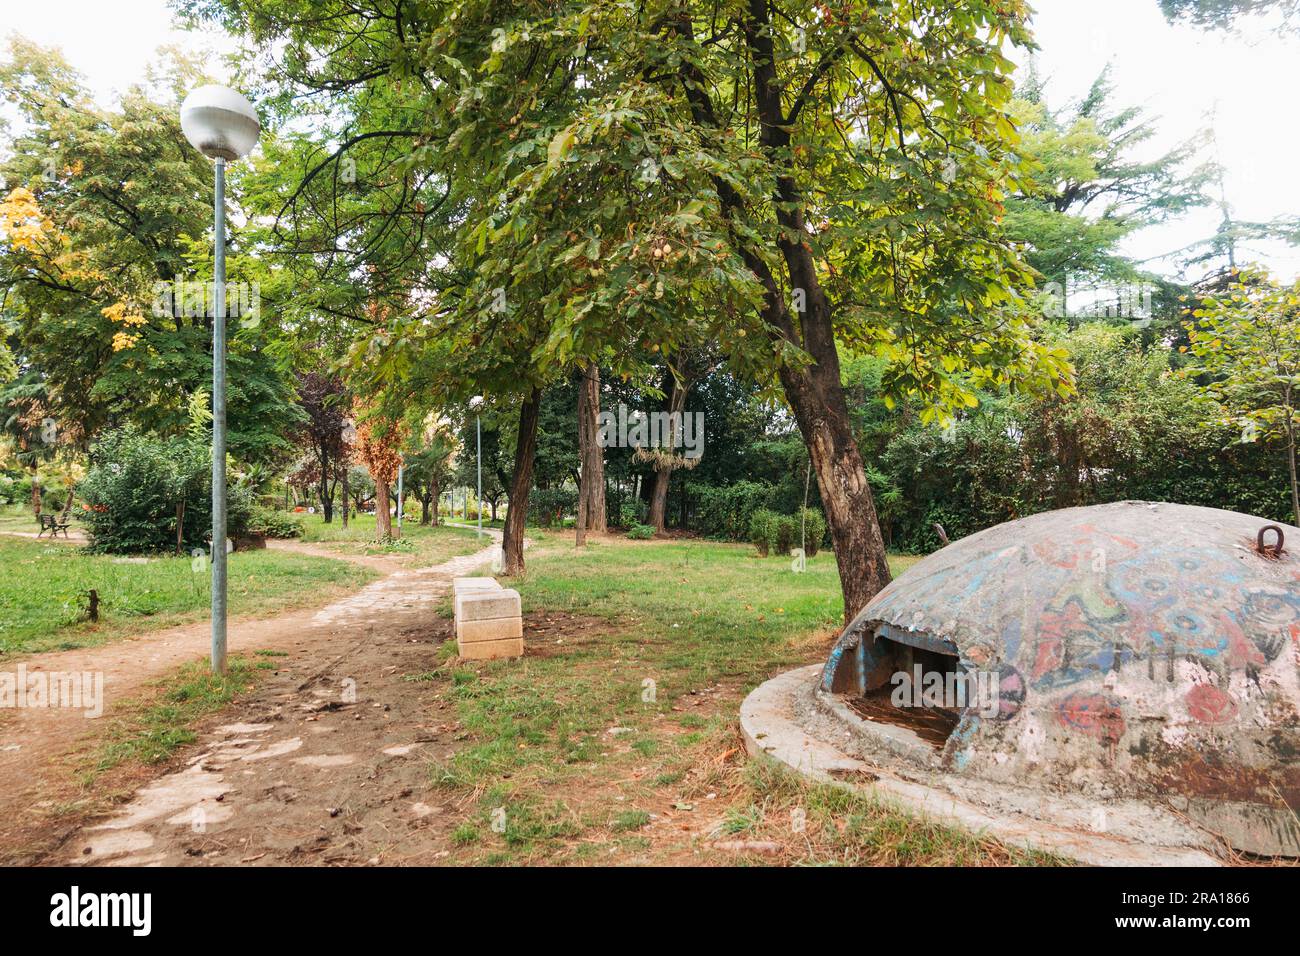 Un bunker en béton dans un parc à Tirana, Albanie. 173 000 ont été placés à travers le pays sous le régime du dictateur communiste Enver Hoxha Banque D'Images